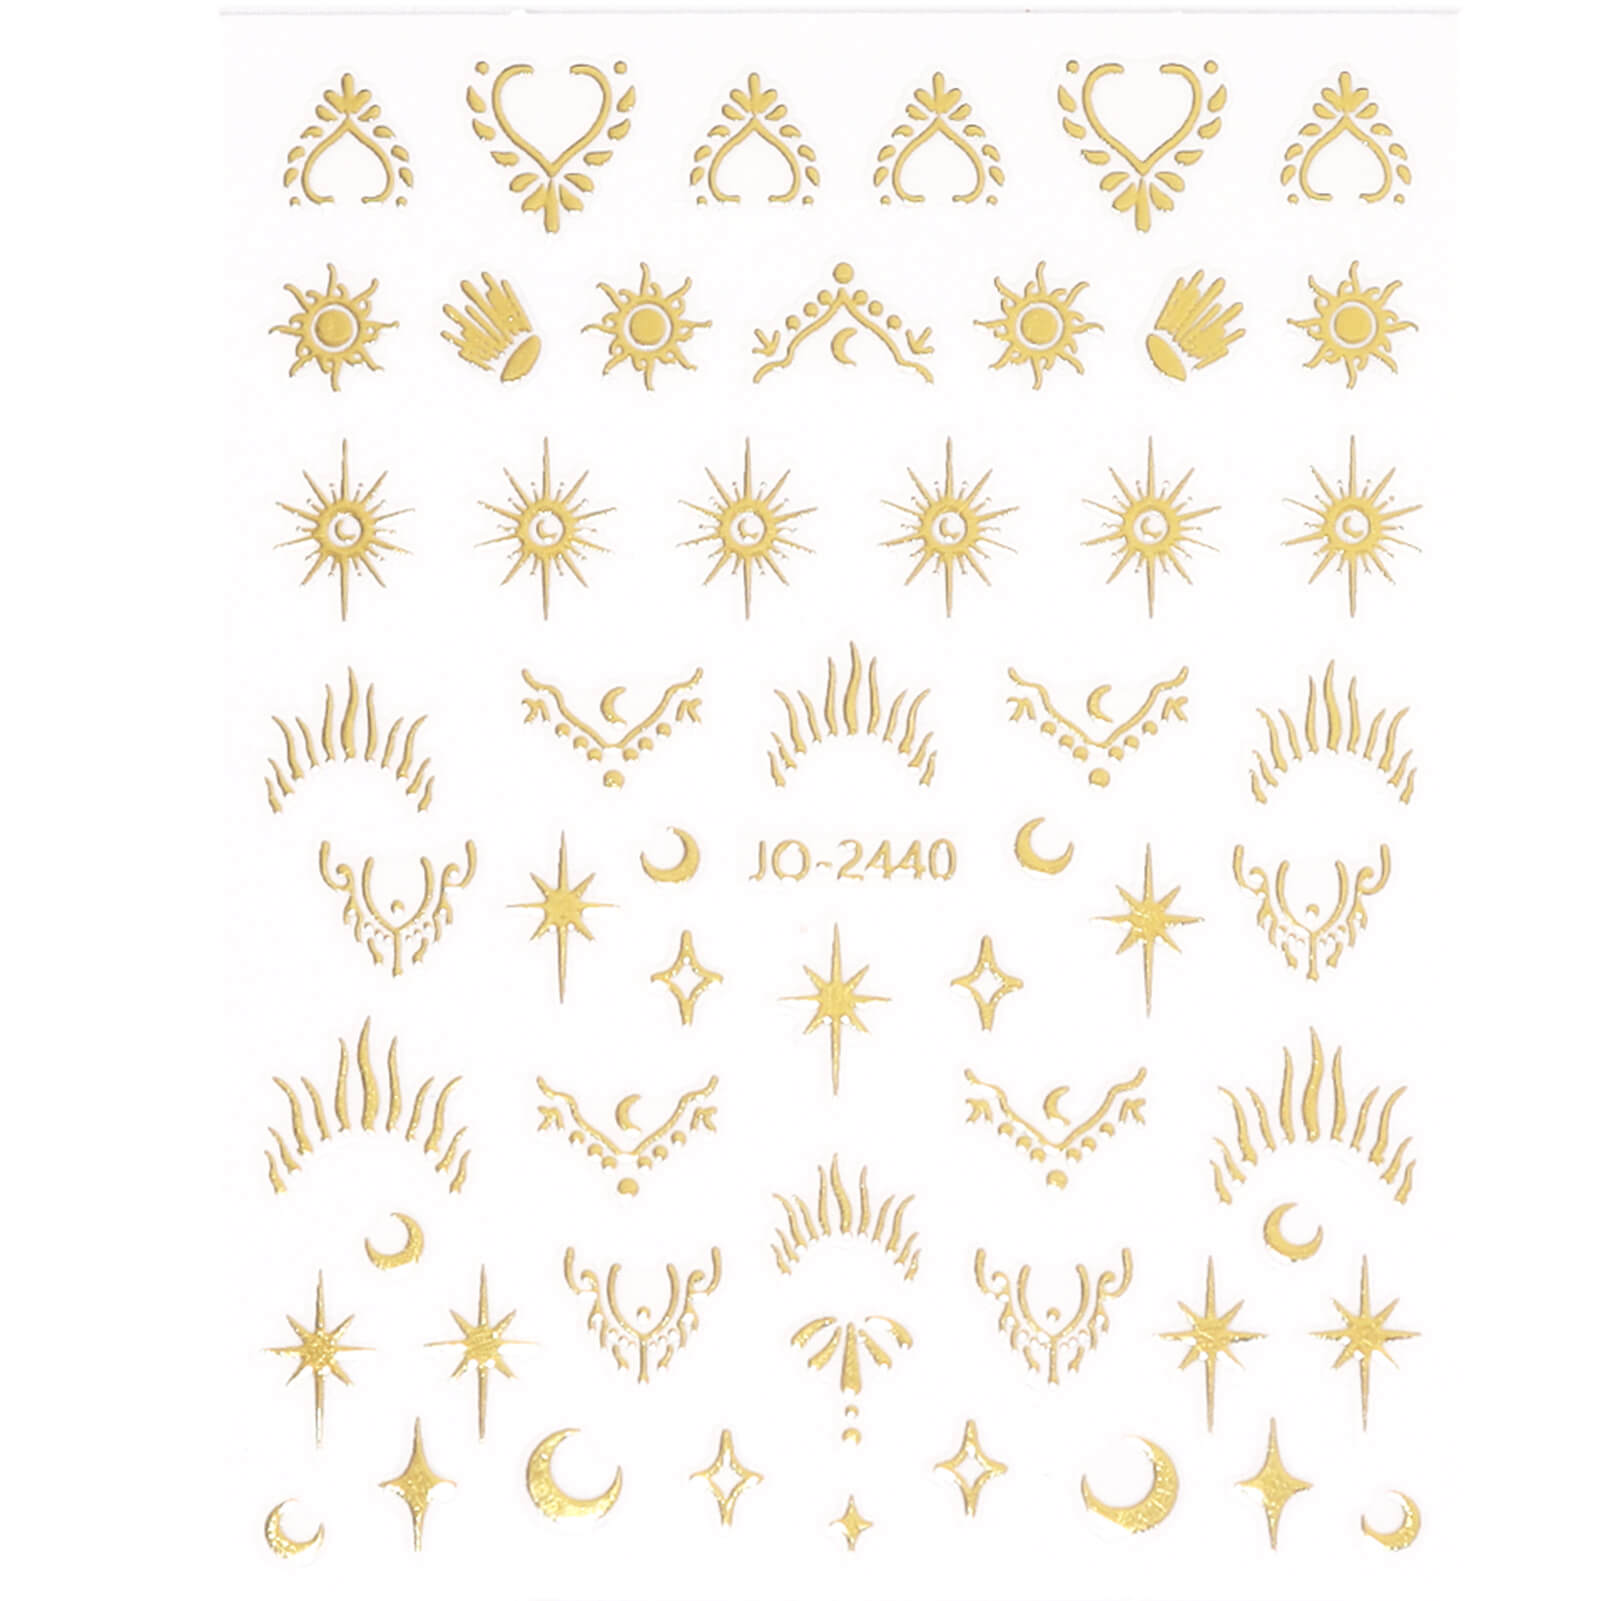 Gold moon and stars nail tattoos